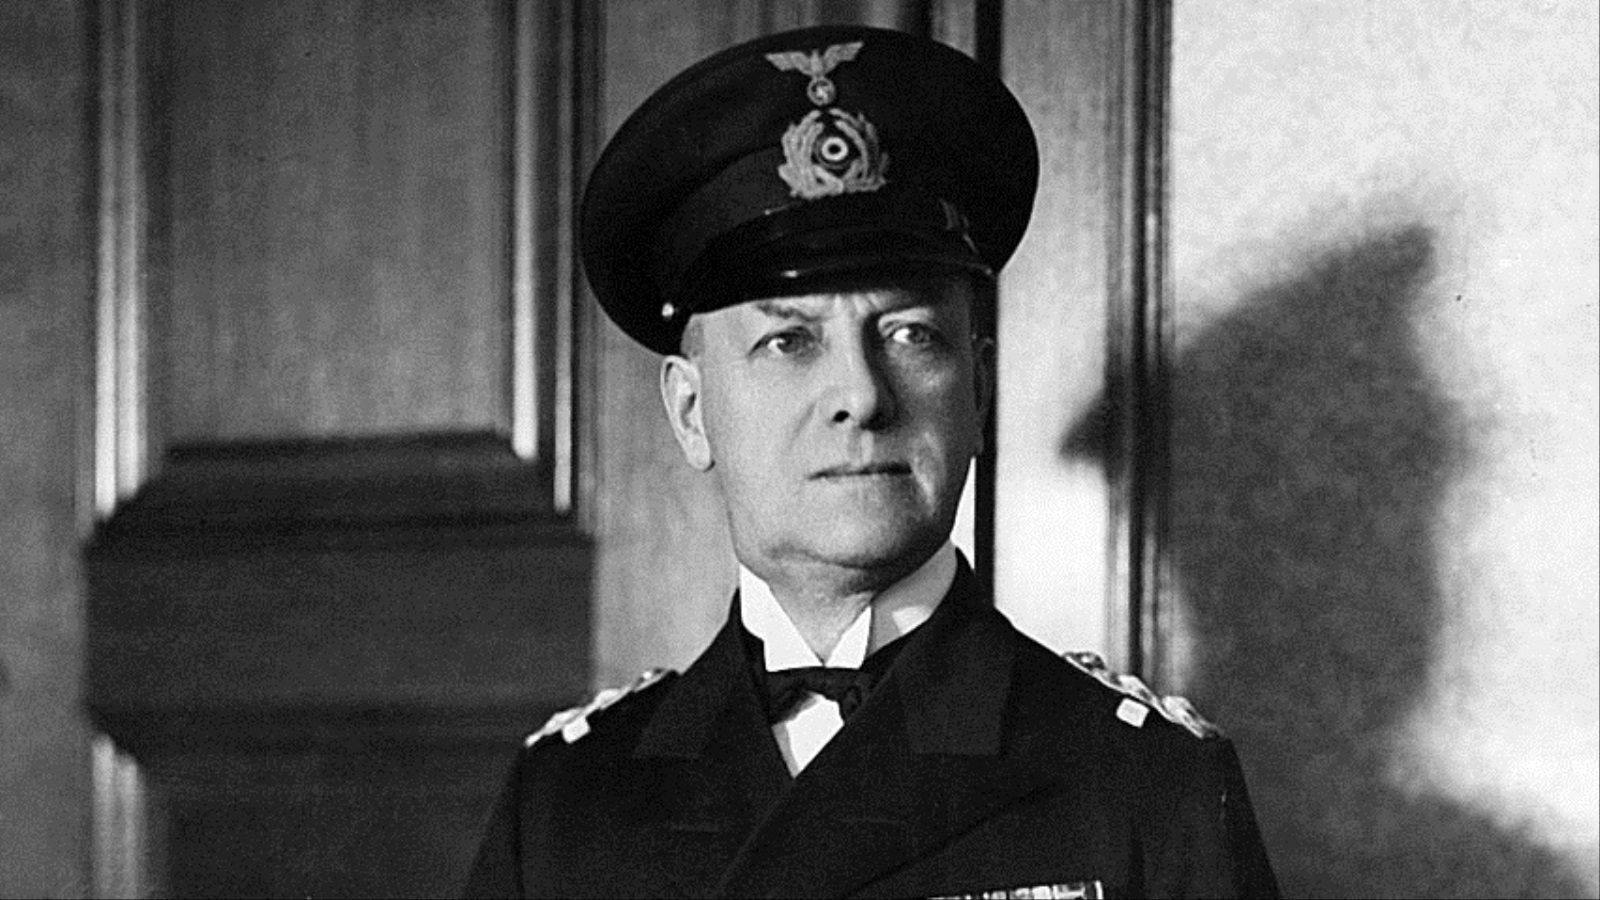 إيريش رايدر قائد البحرية الألمانية حتى عام 1943  (مواقع التواصل)